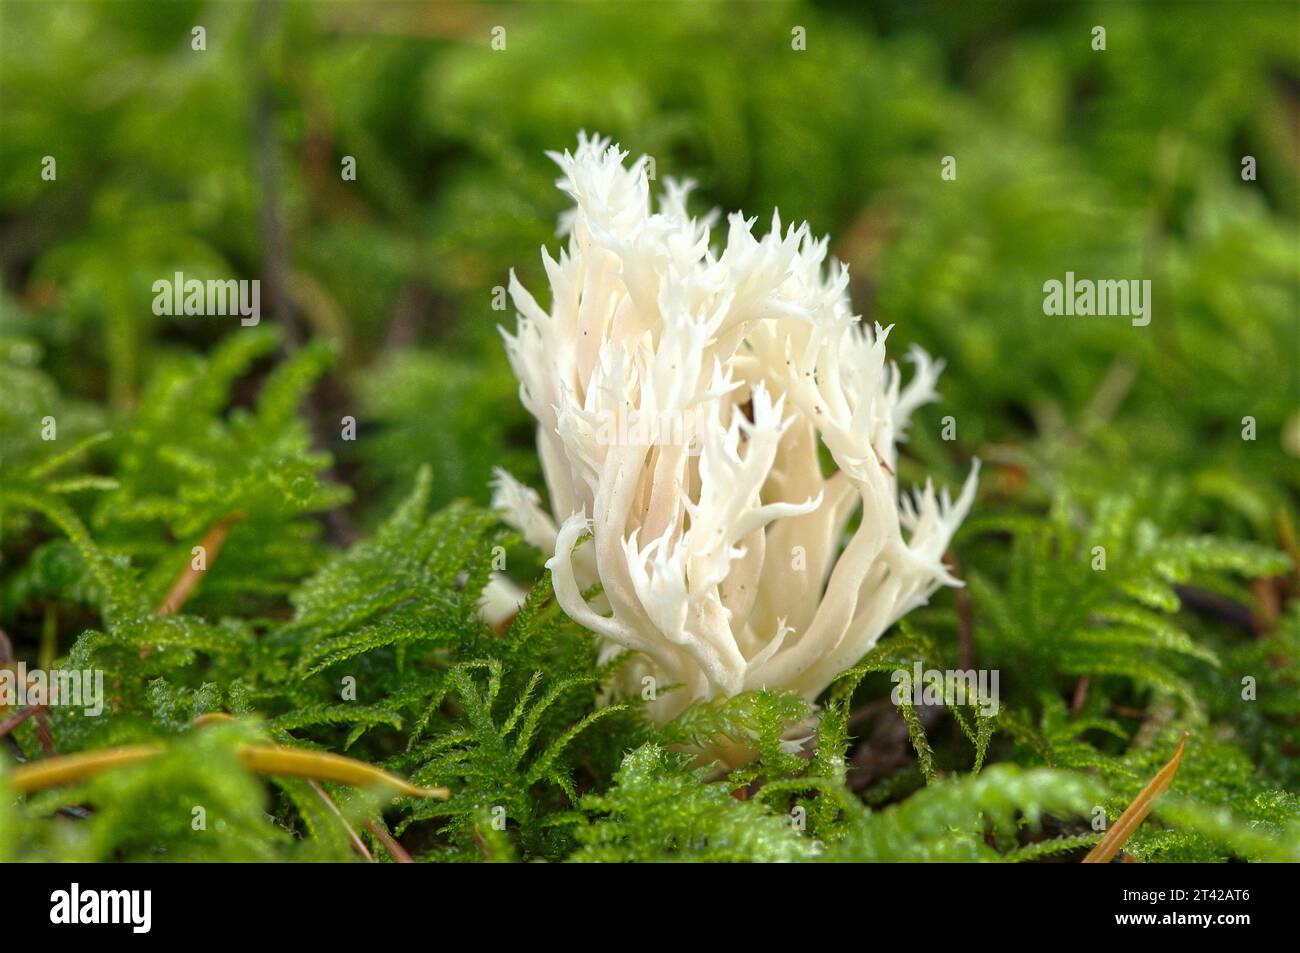 Fungo corallino bianco o fungo corallino Crested (Clavulina cristata) che cresce in un letto di muschio. British Columbia, Canada. Foto Stock